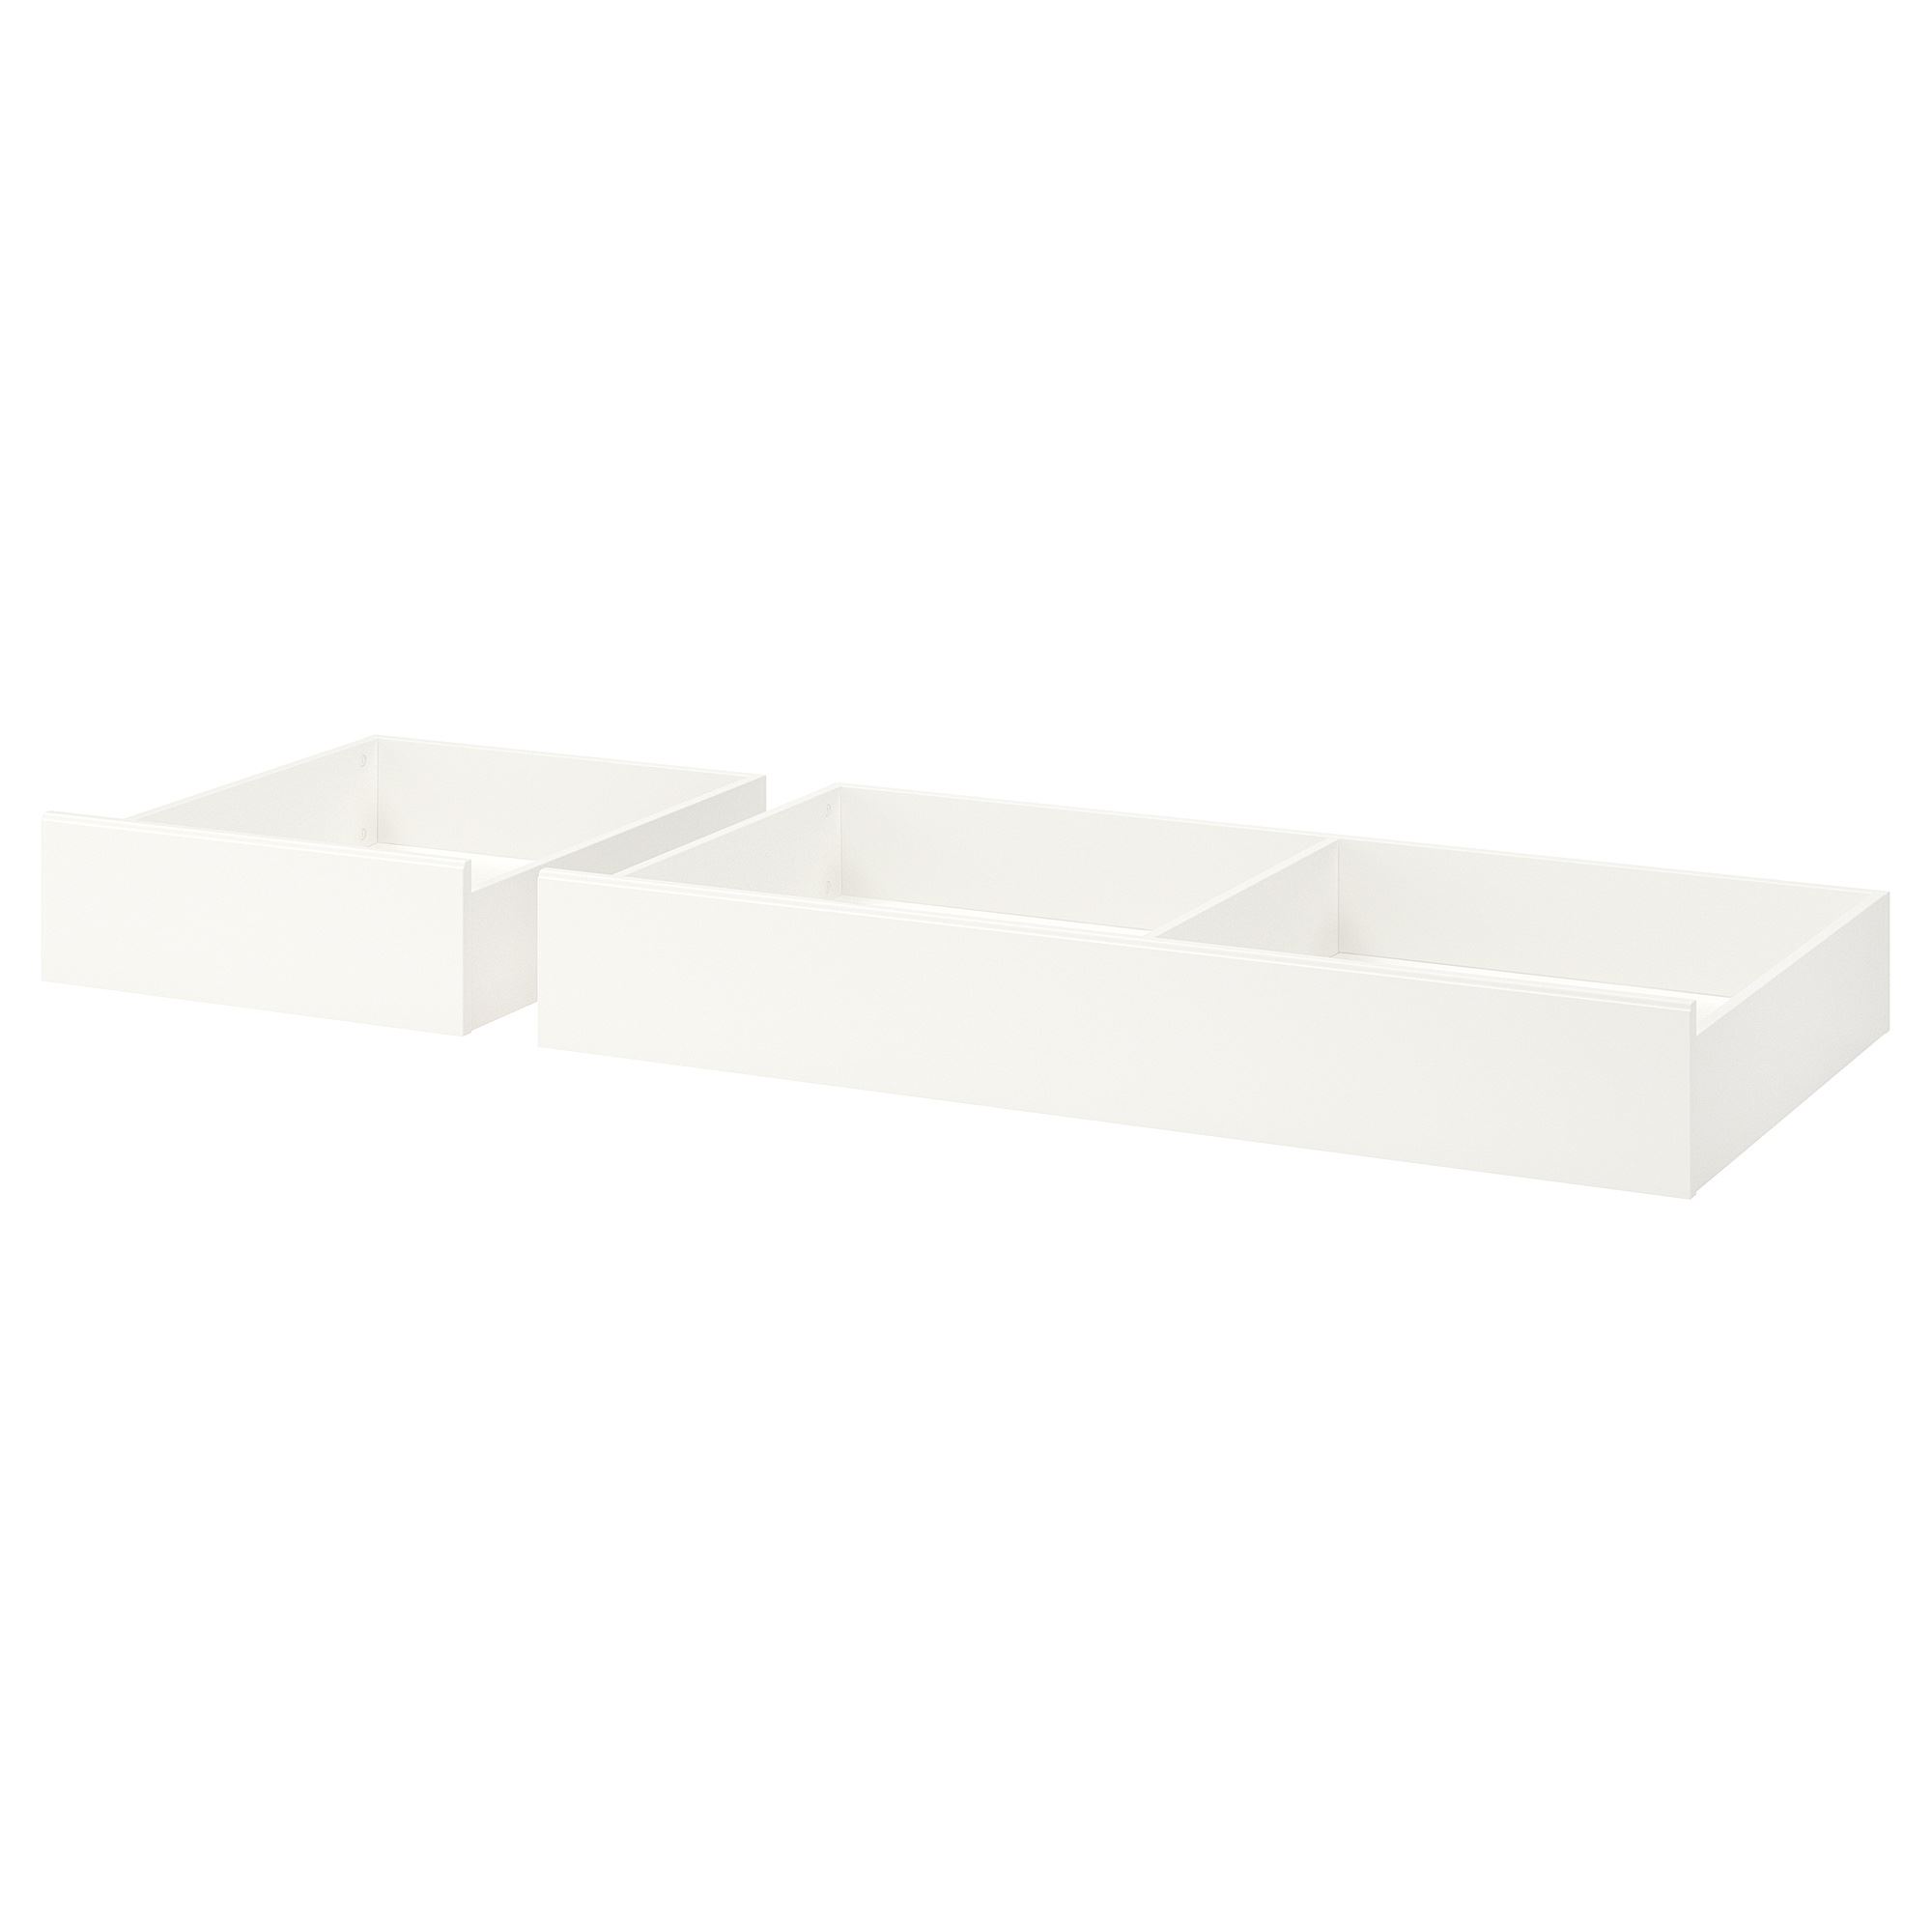 SONGESAND yatak altı eşya kutusu, beyaz, 200 cm